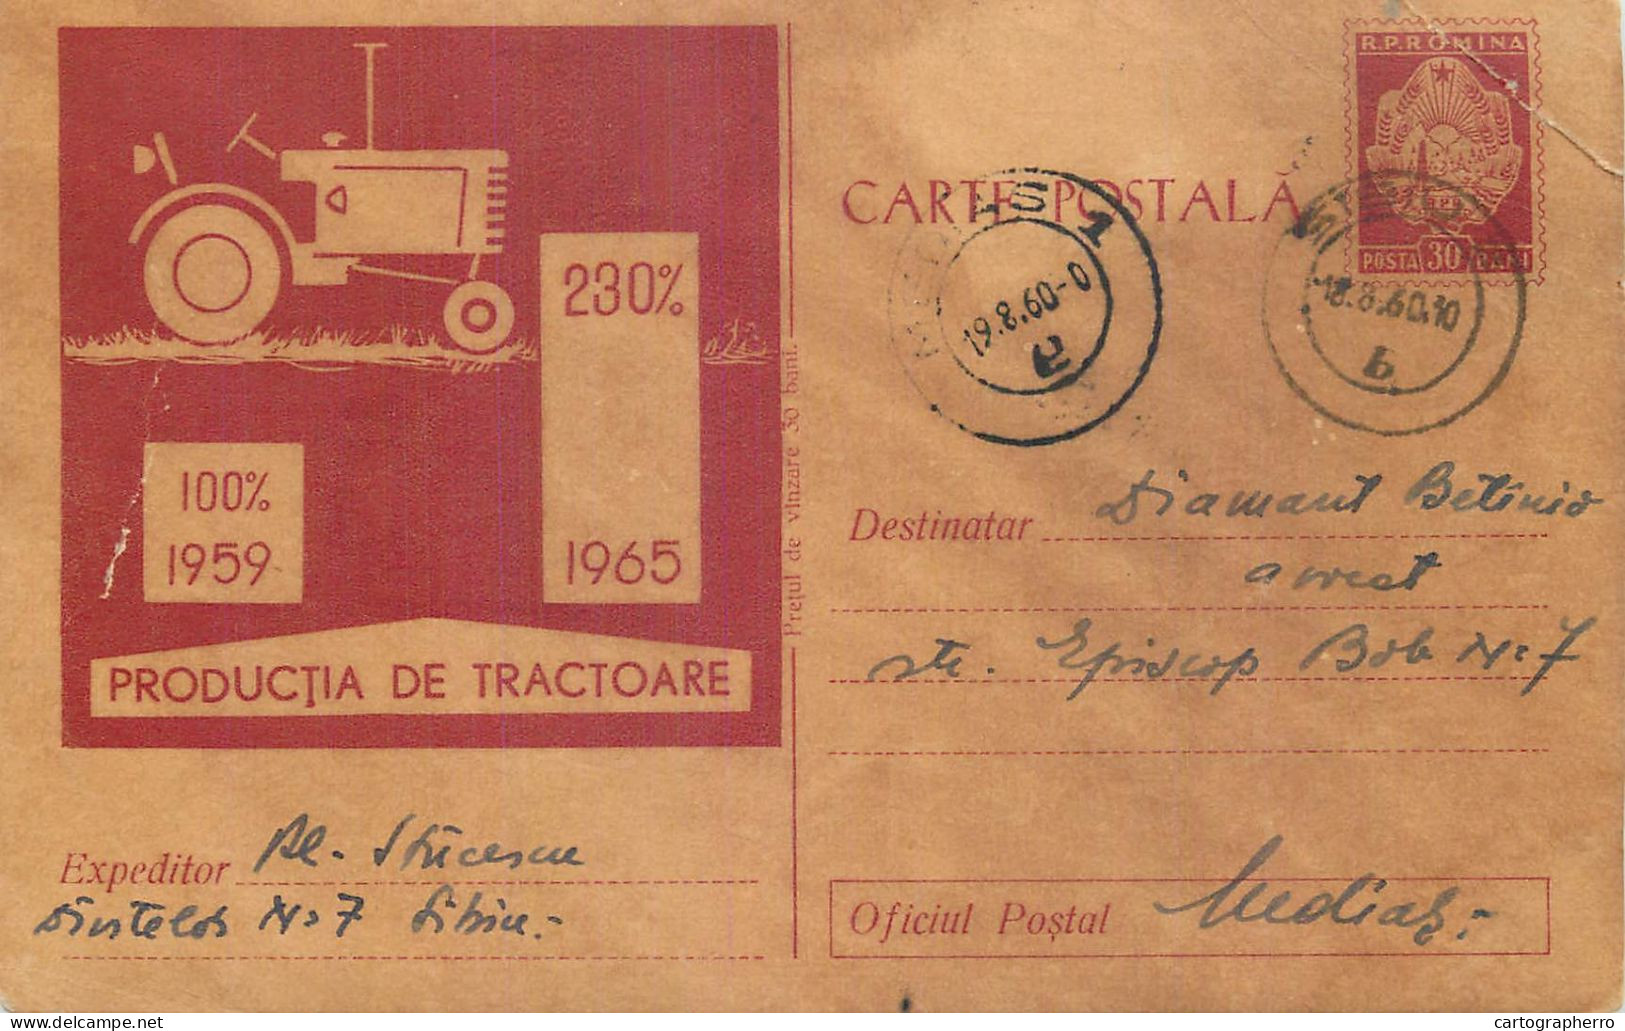 Postal Stationery Postcard Romania 1959 Reclama Pentru Cresterea Productiei De Tractoare - Romania